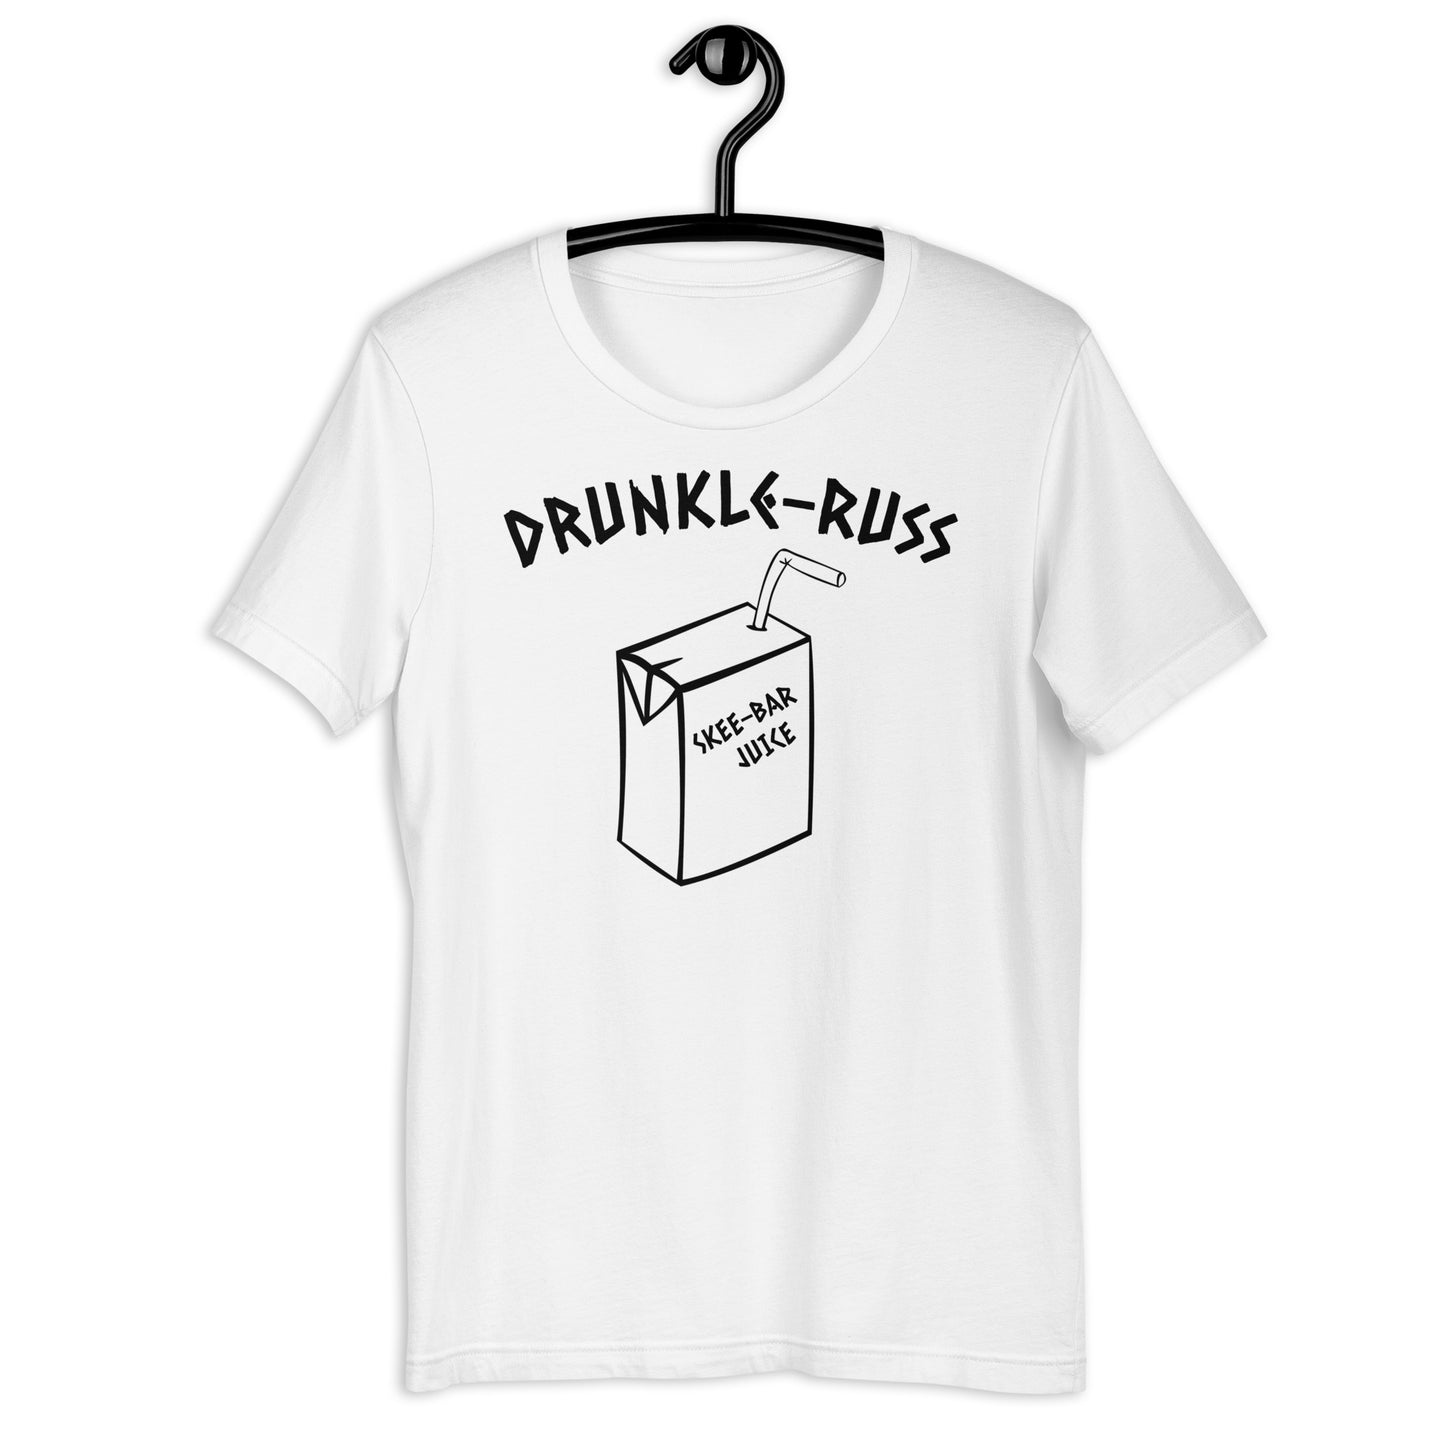 Drunkle-Russ Shirt